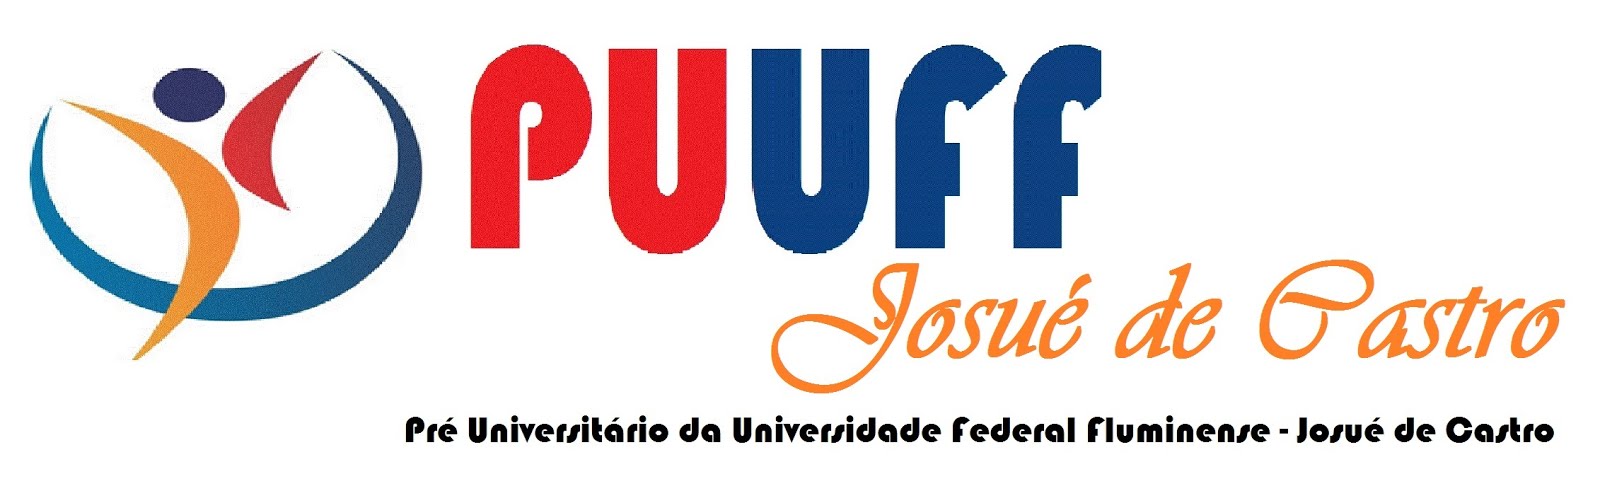 Pré Universitário da Universidade Federal Fluminense - Josué de Castro